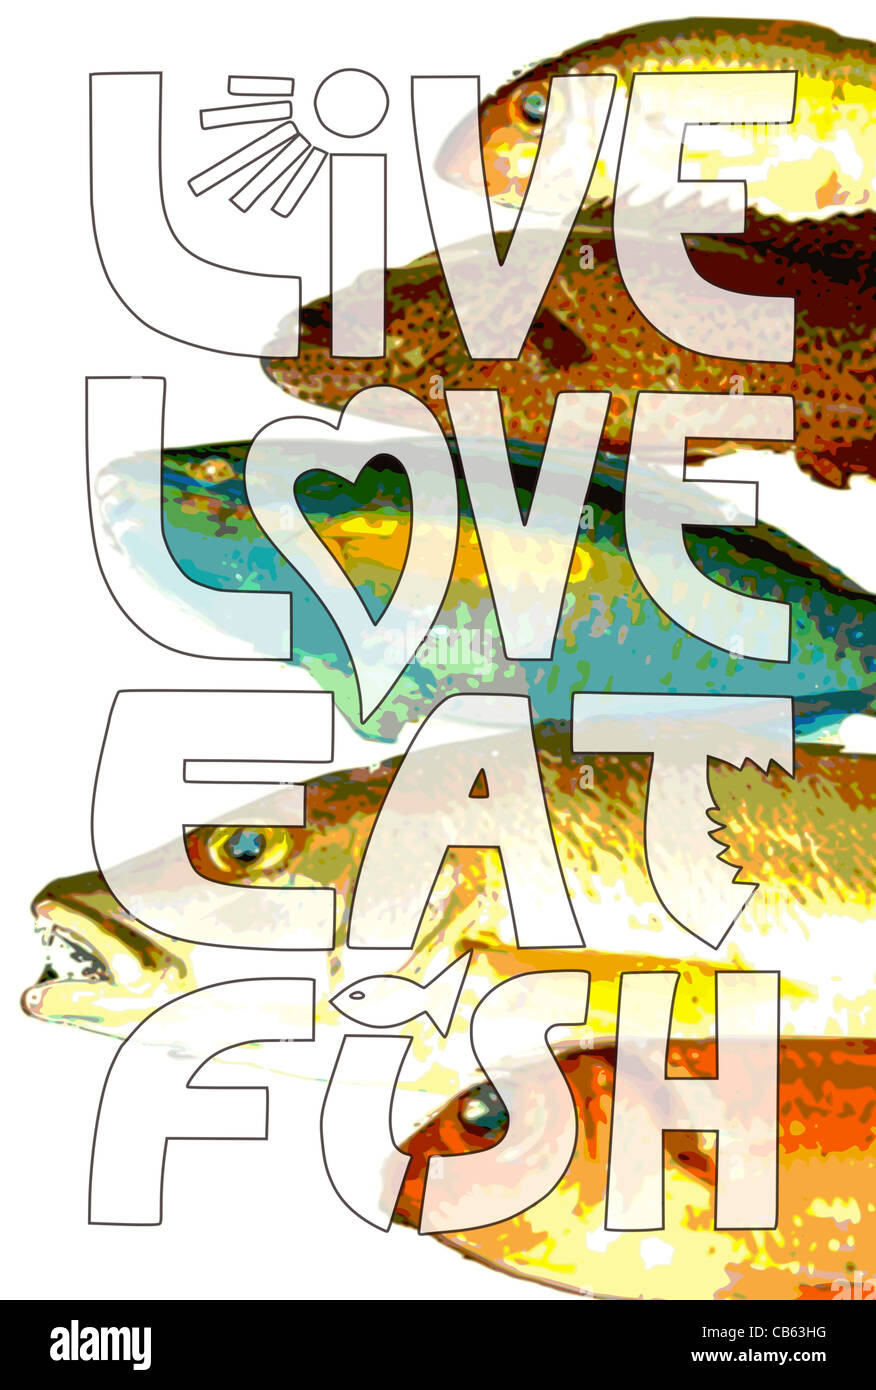 Live Love Eat Fish - Foto-Collage-Poster, das den Lebensunterhalt mit einem gesunden peskatarischen oder vegetarischen Lebensstil feiert. Vielleicht genießen Sie eine entzündungshemmende Ernährung. Stockfoto